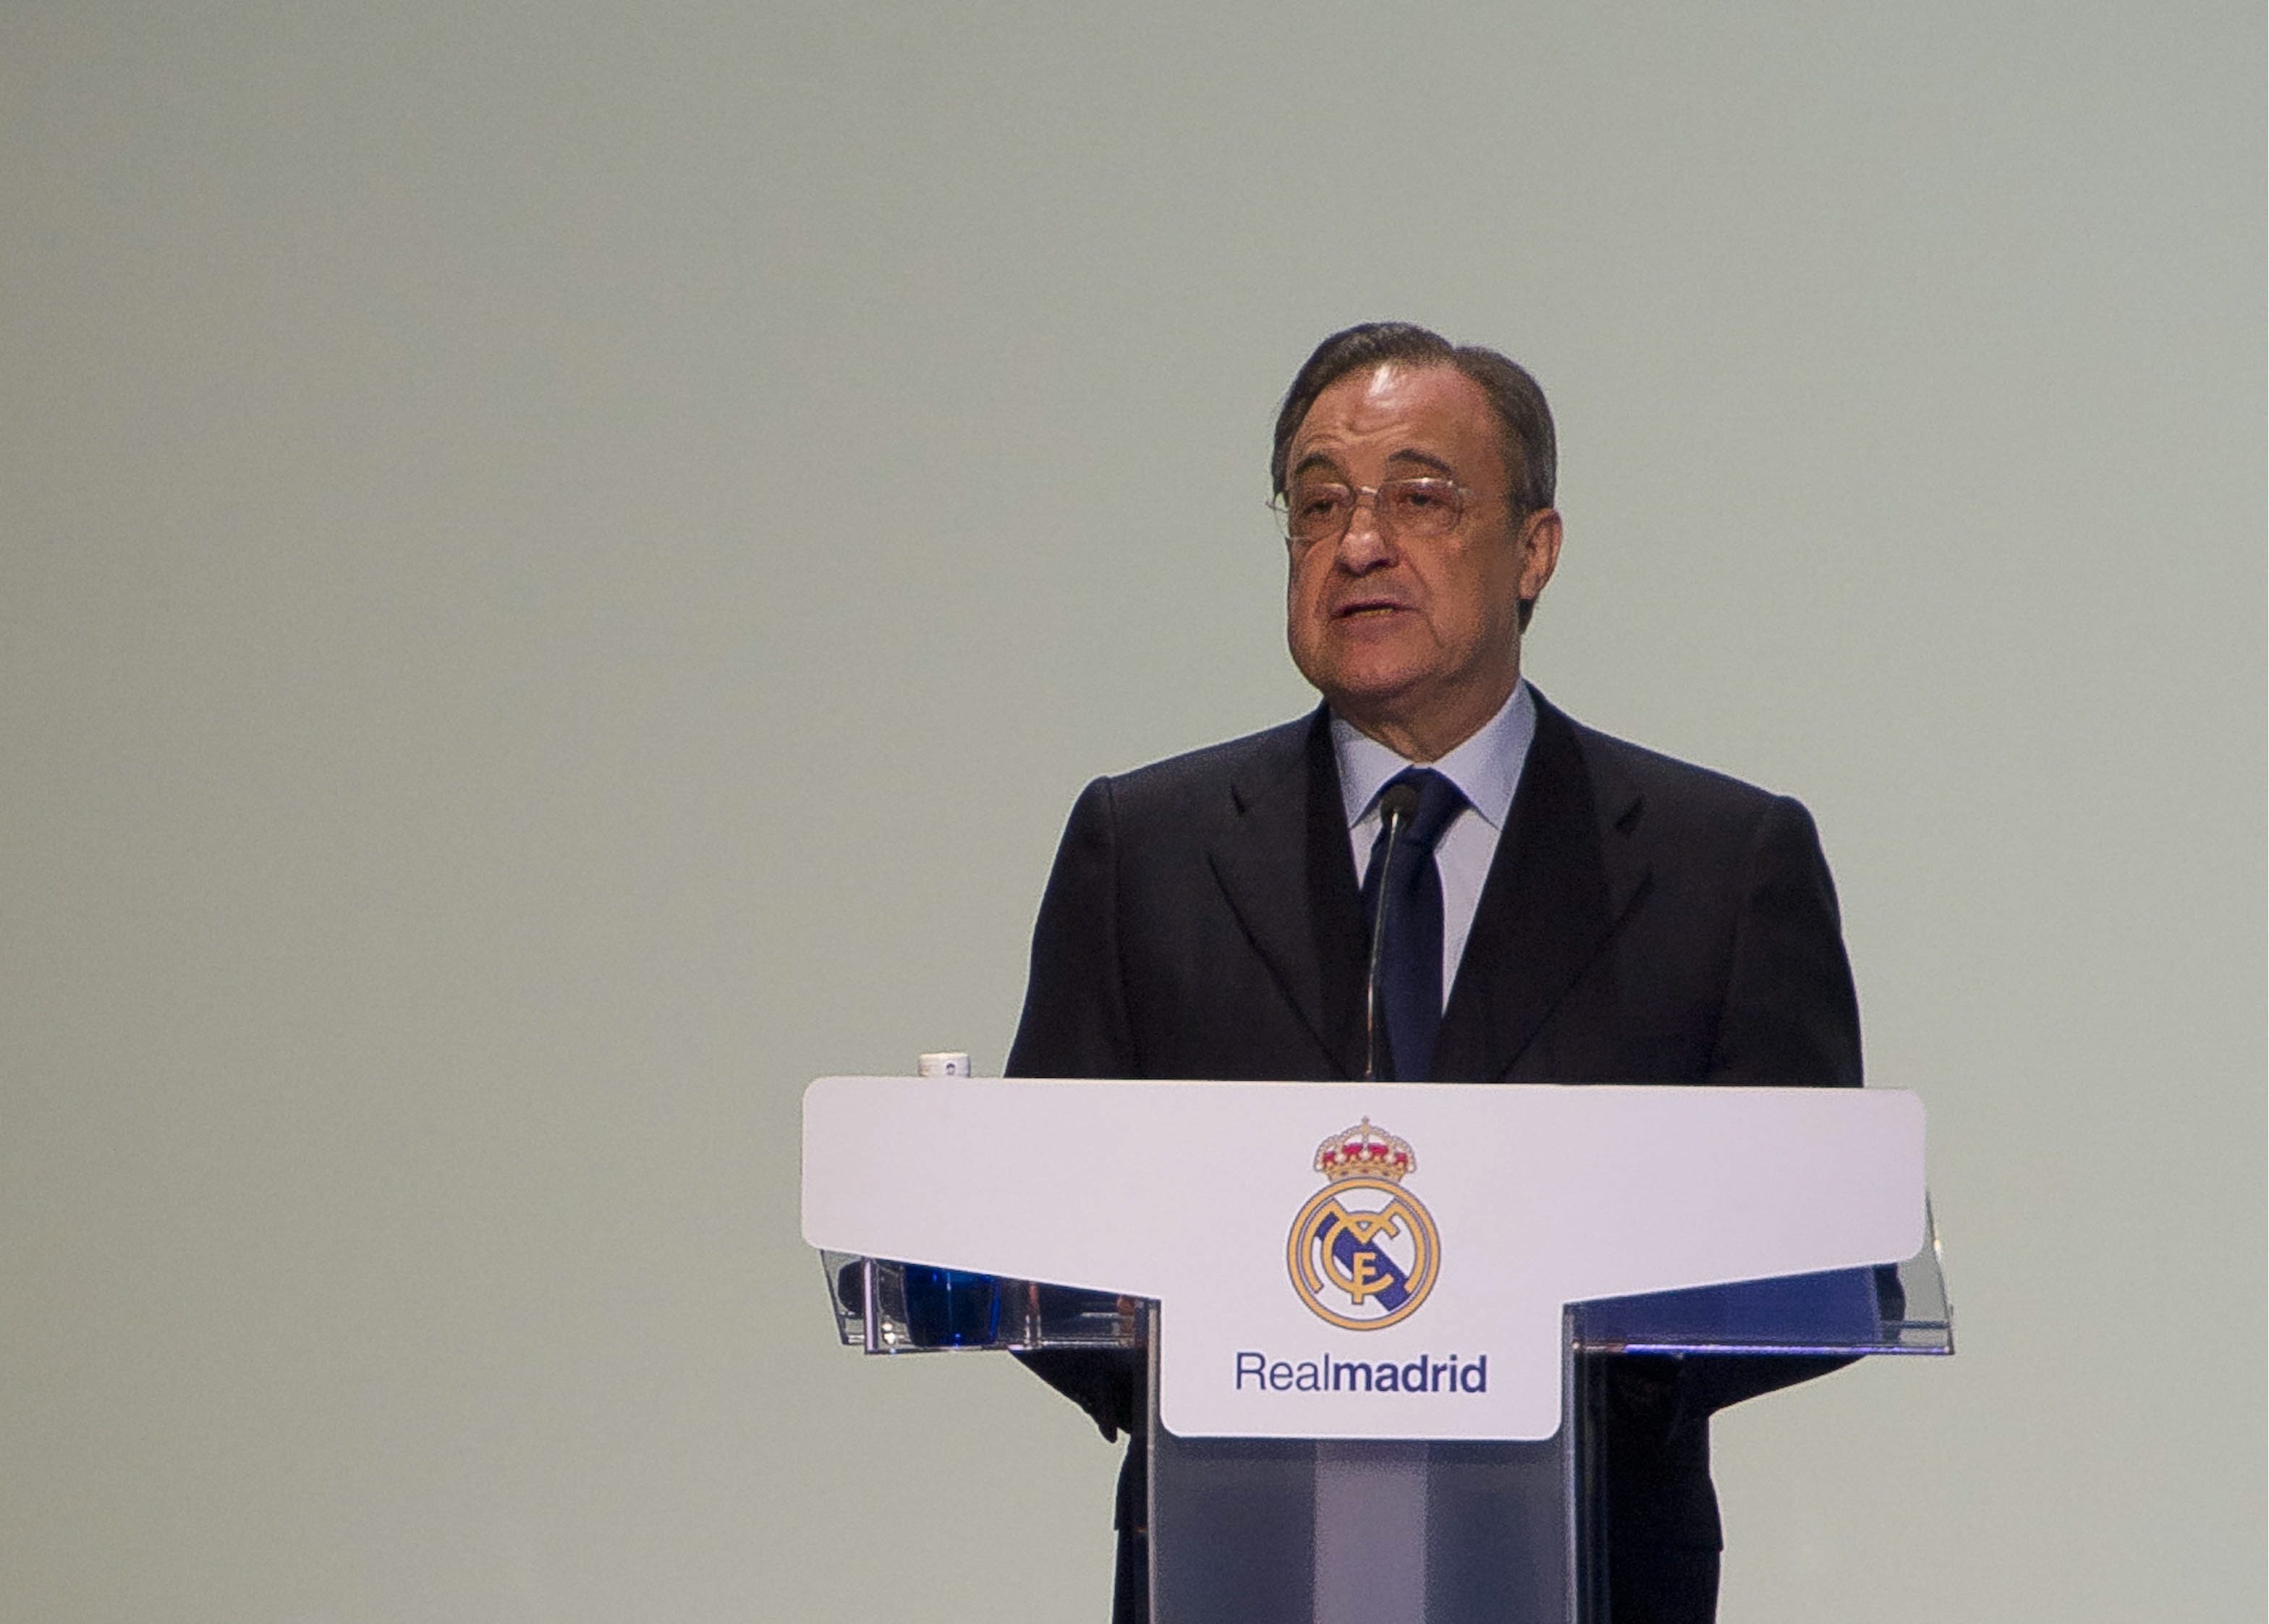 Los profesionales mejor pagados del Real Madrid dan un ejemplo de responsabilidad y se rebajan los sueldos: que aprendan los políticos